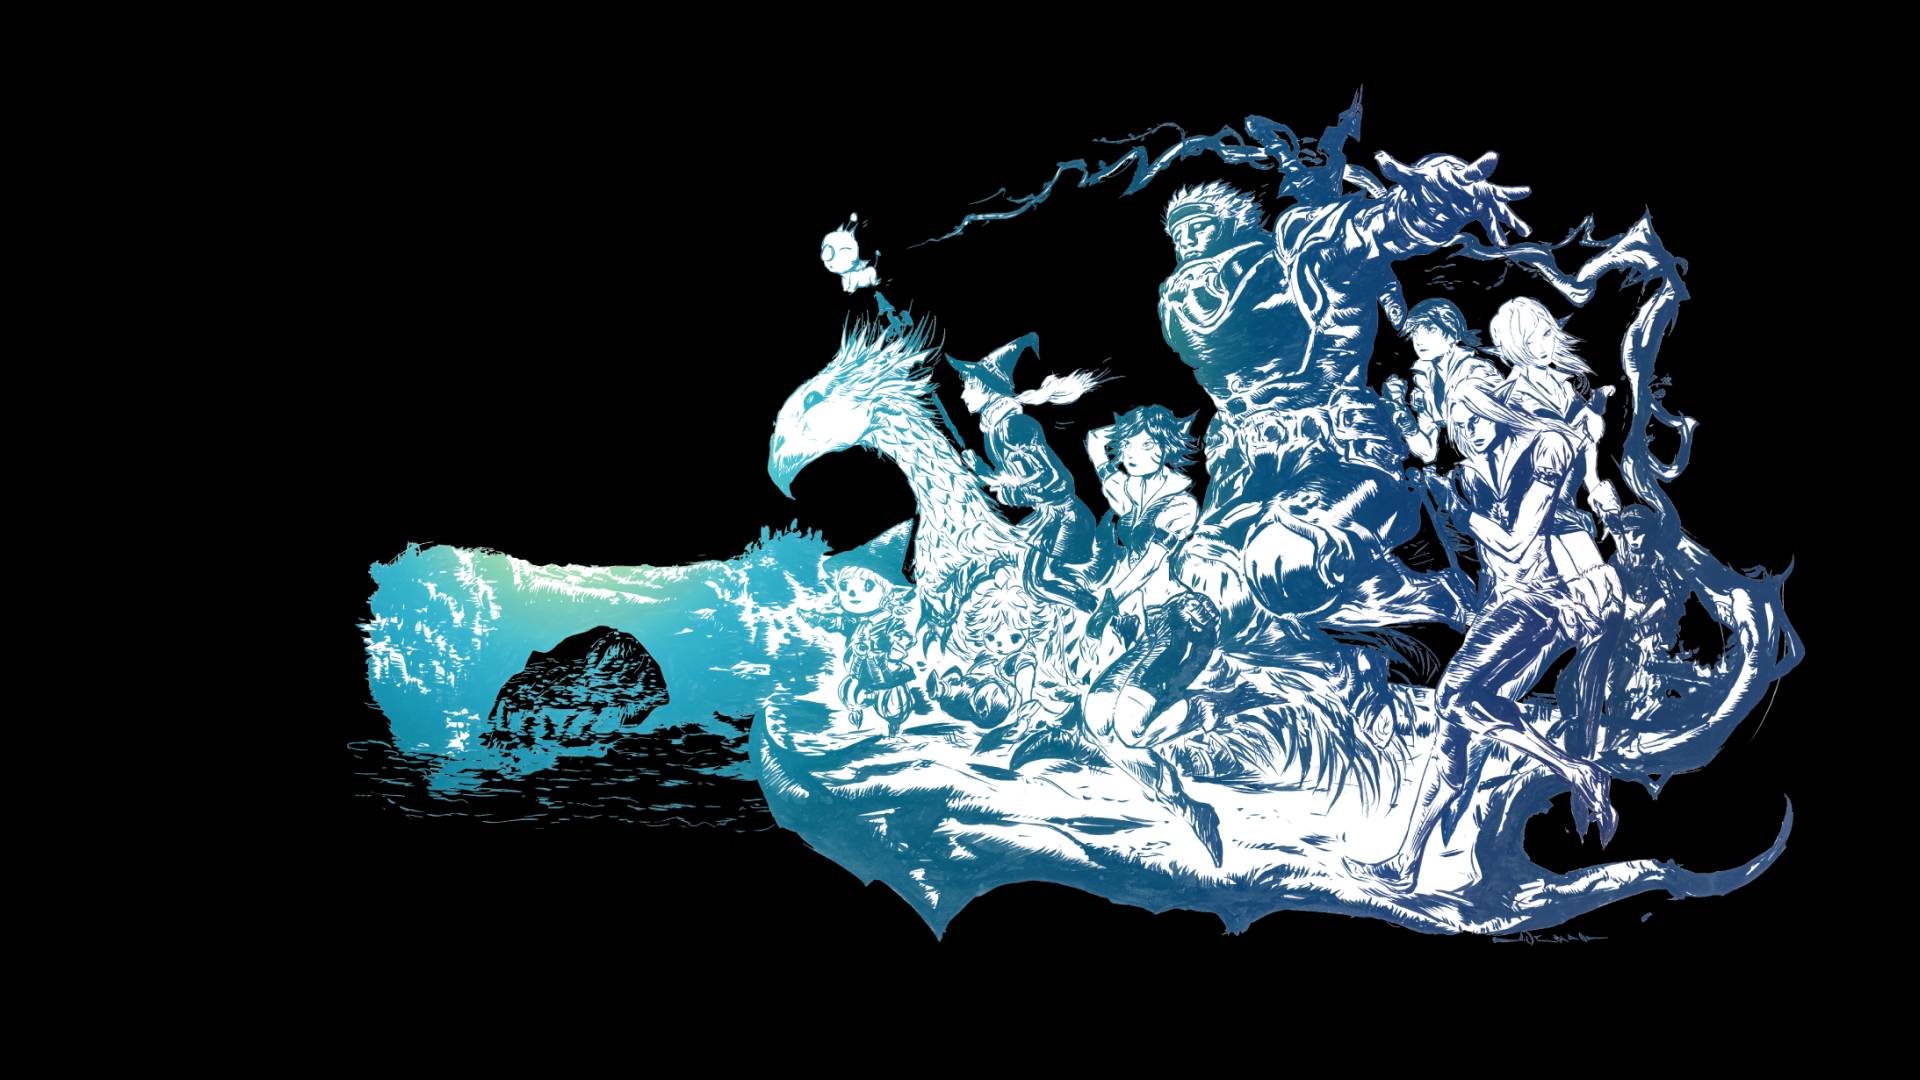 Final Fantasy XI artwork